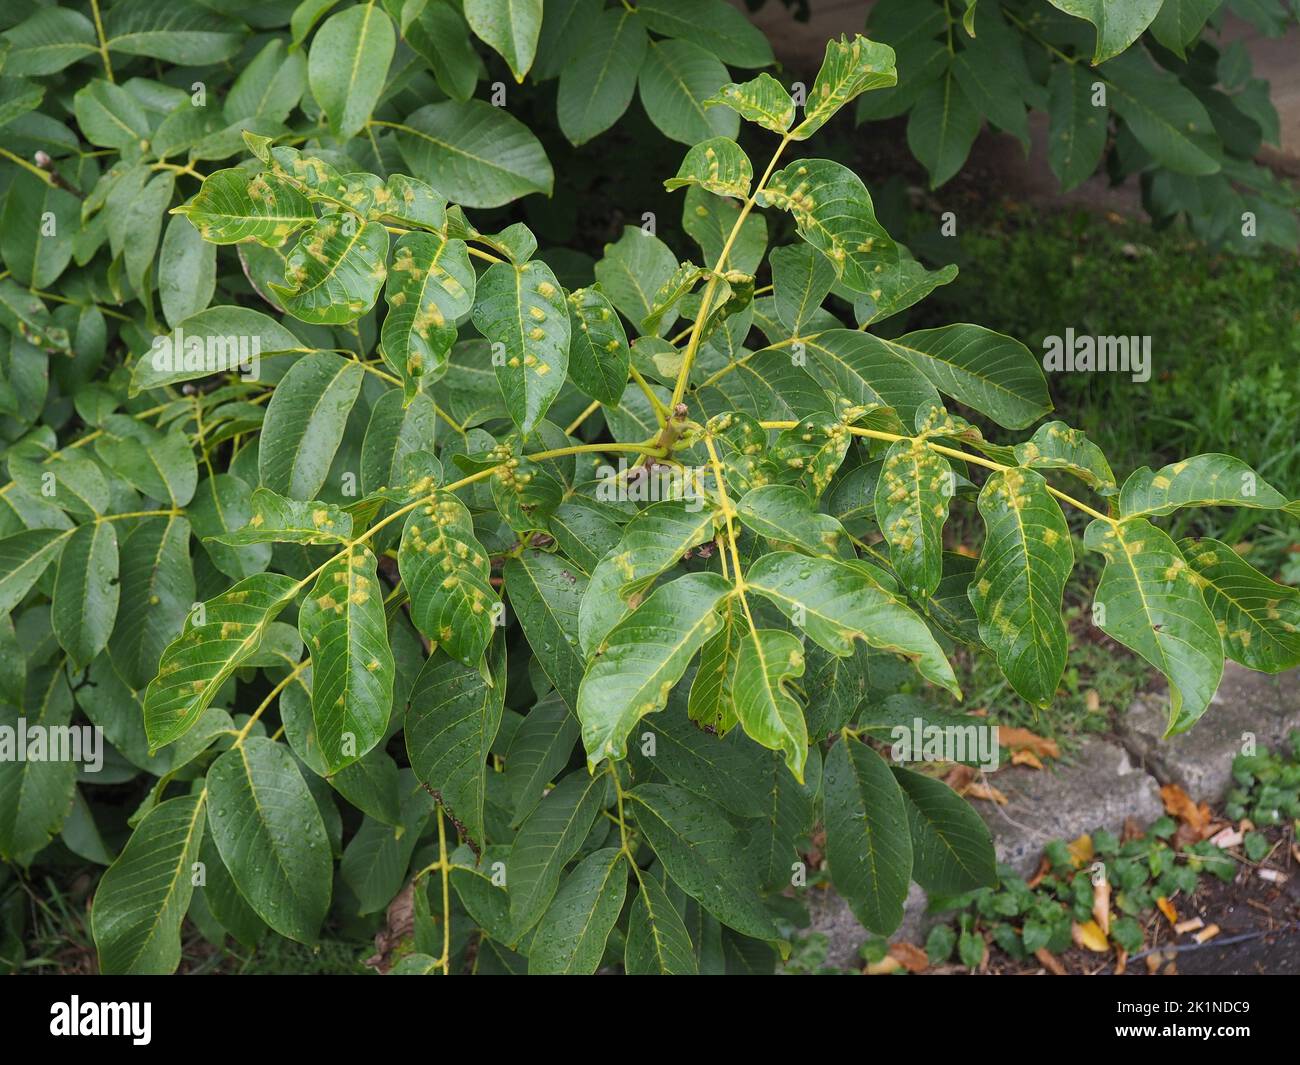 Erkrankte Blätter eines Walnussbaums, Walnussblistermilben, die sich auf den Saft der Blätter füttern. Diese winzigen, weißlichen, wurstförmigen Milben verursachen erhöhte gree Stockfoto